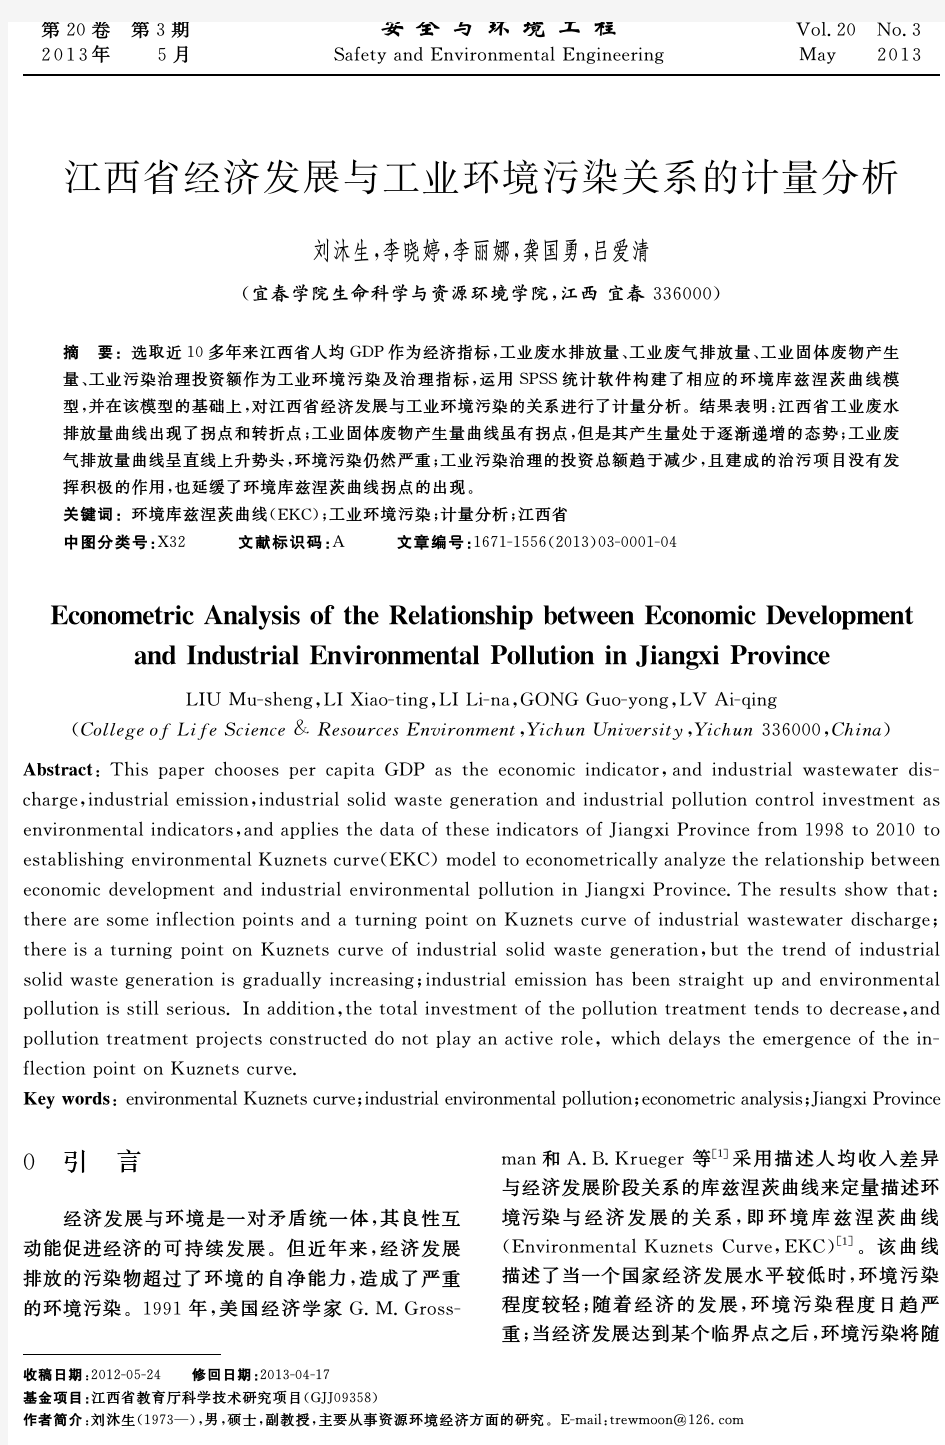 江西省经济发展与工业环境污染关系的计量分析